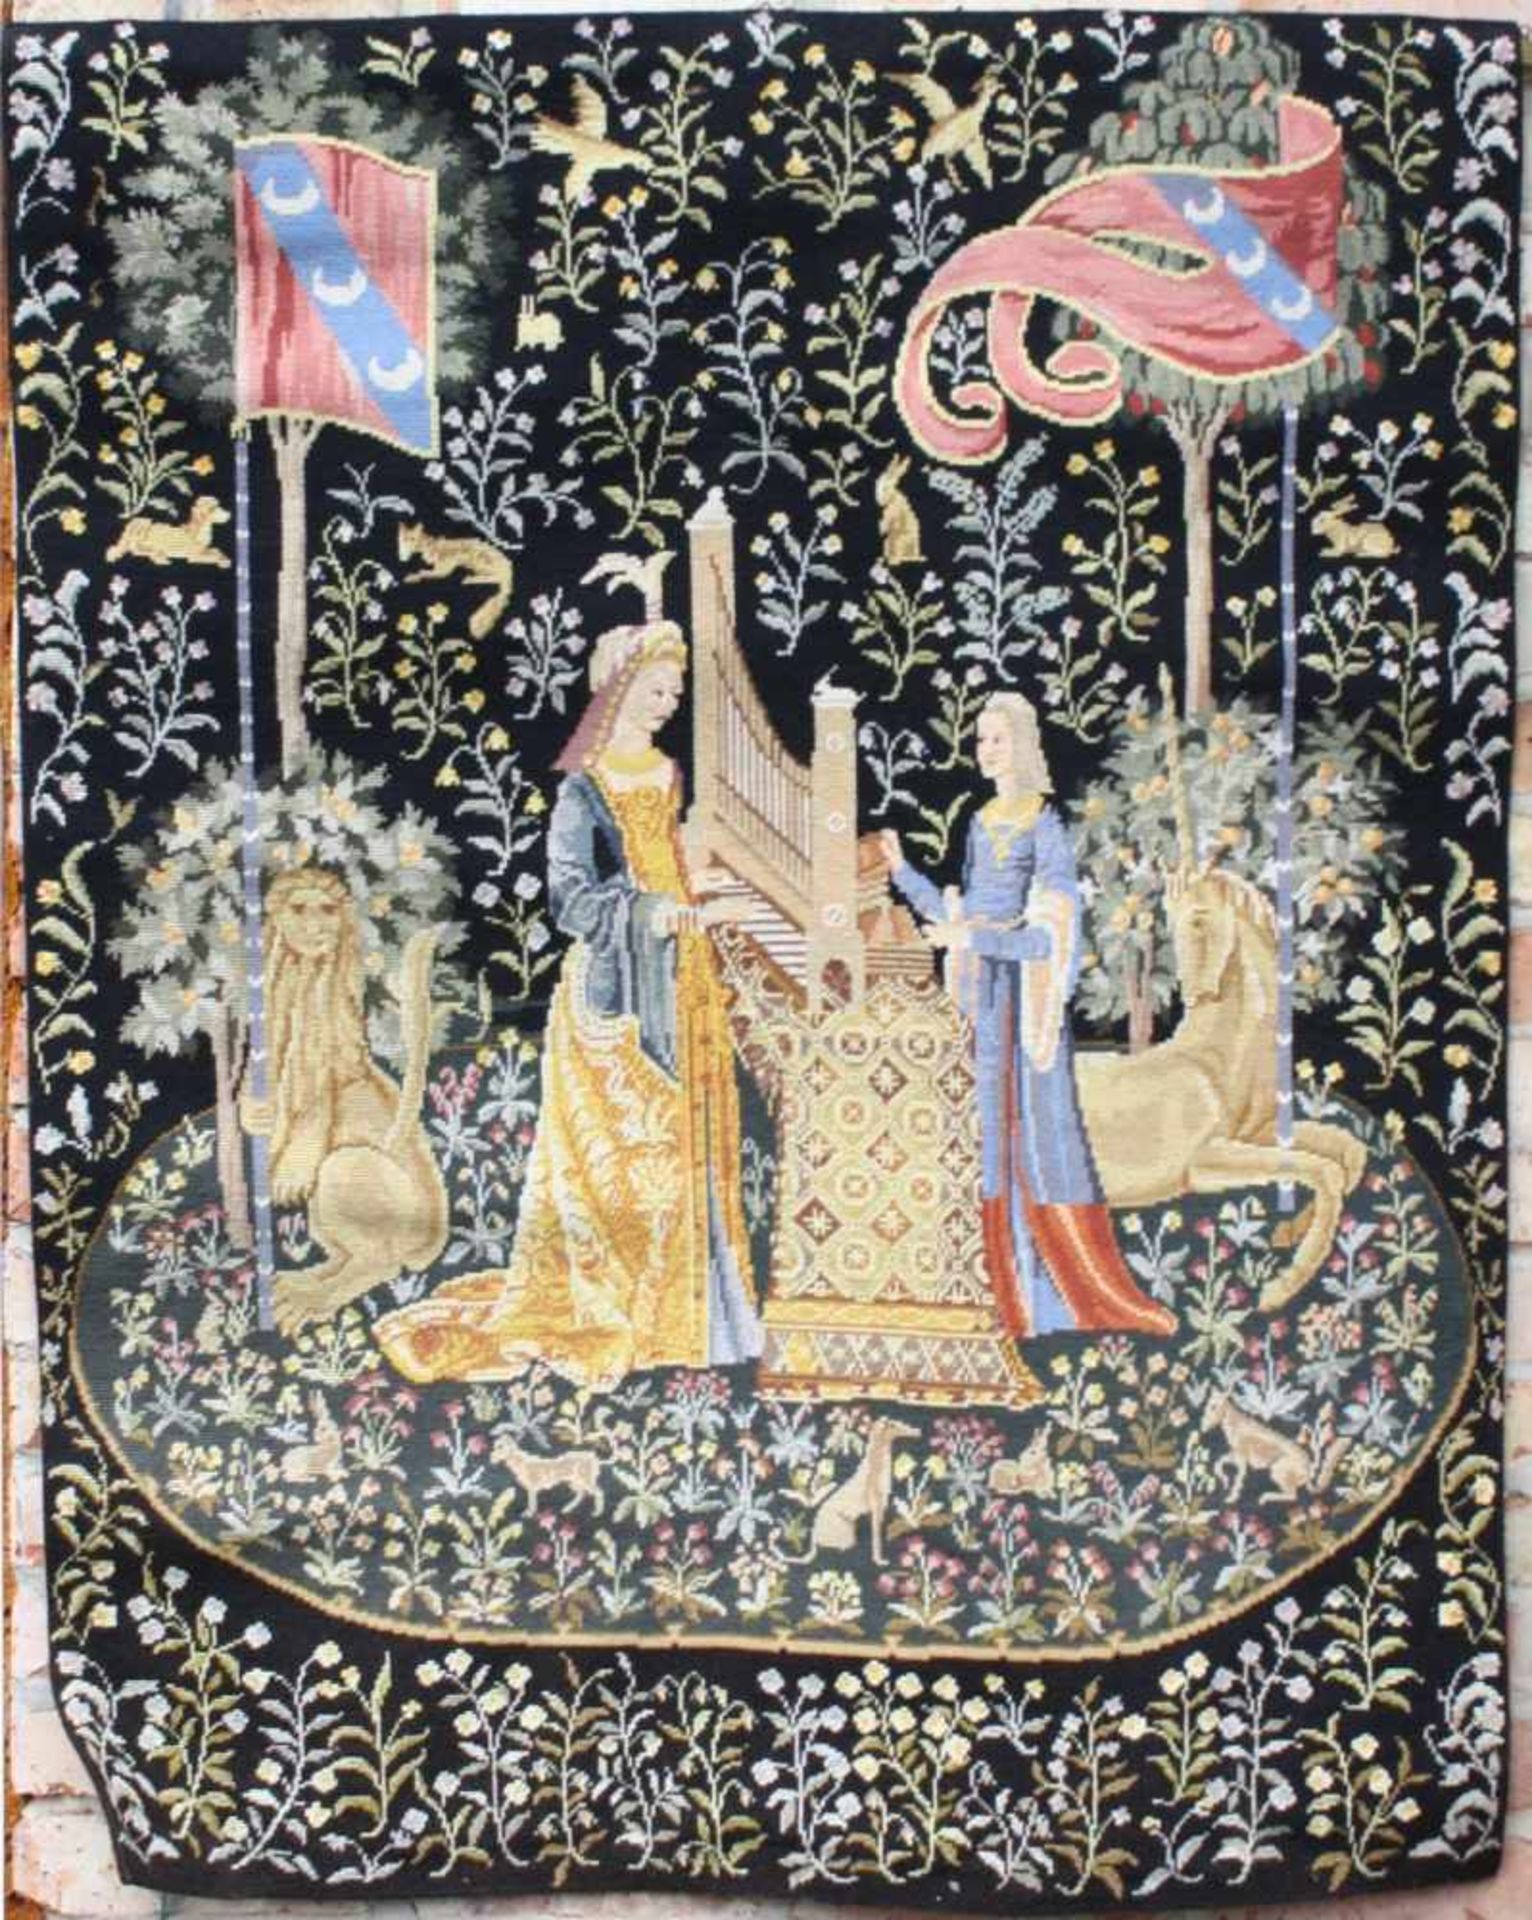 Gobelin-Stickerei, "Die Dame mit dem Einhorn"Motiv nach mittelalterliche Vorlage gearbeitet, "Der